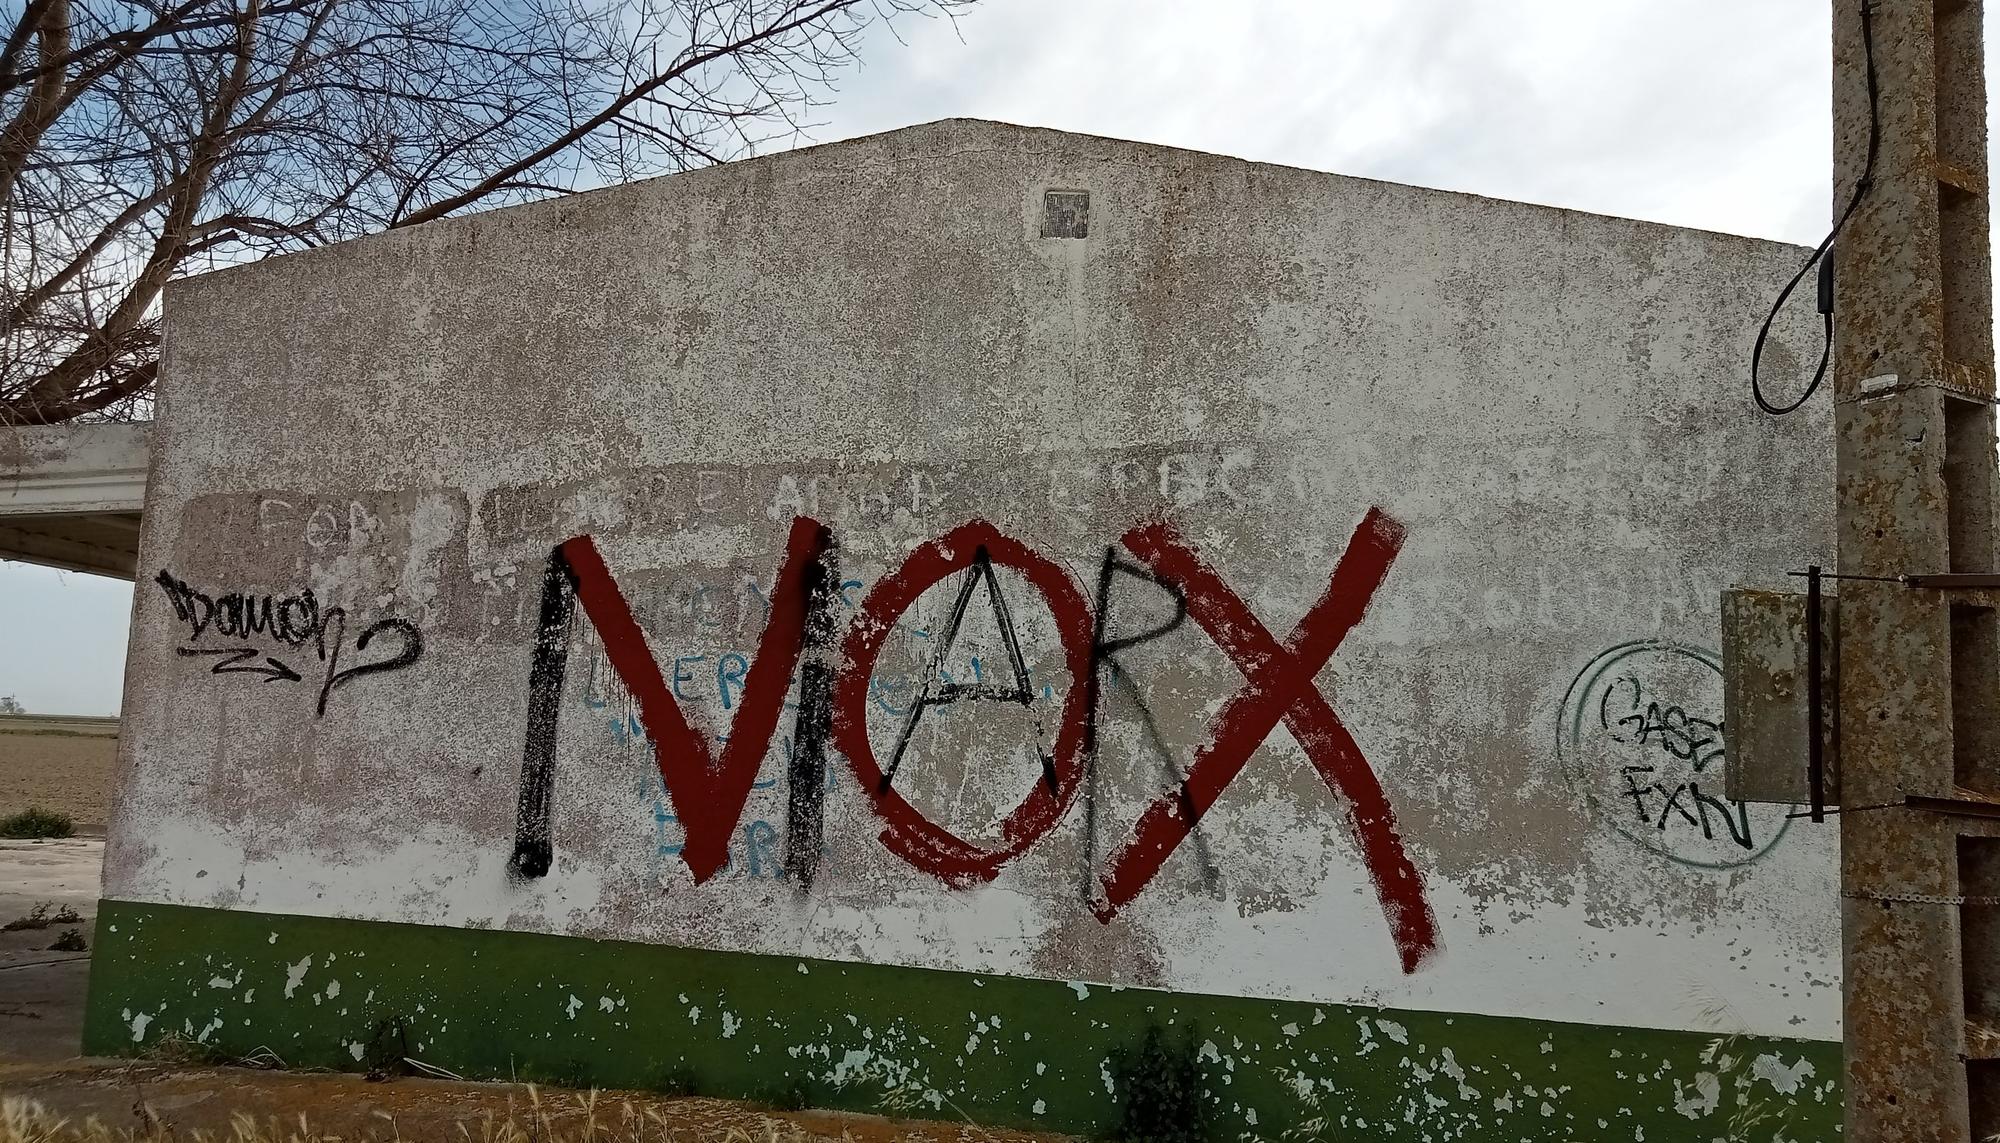 Vox-Marx